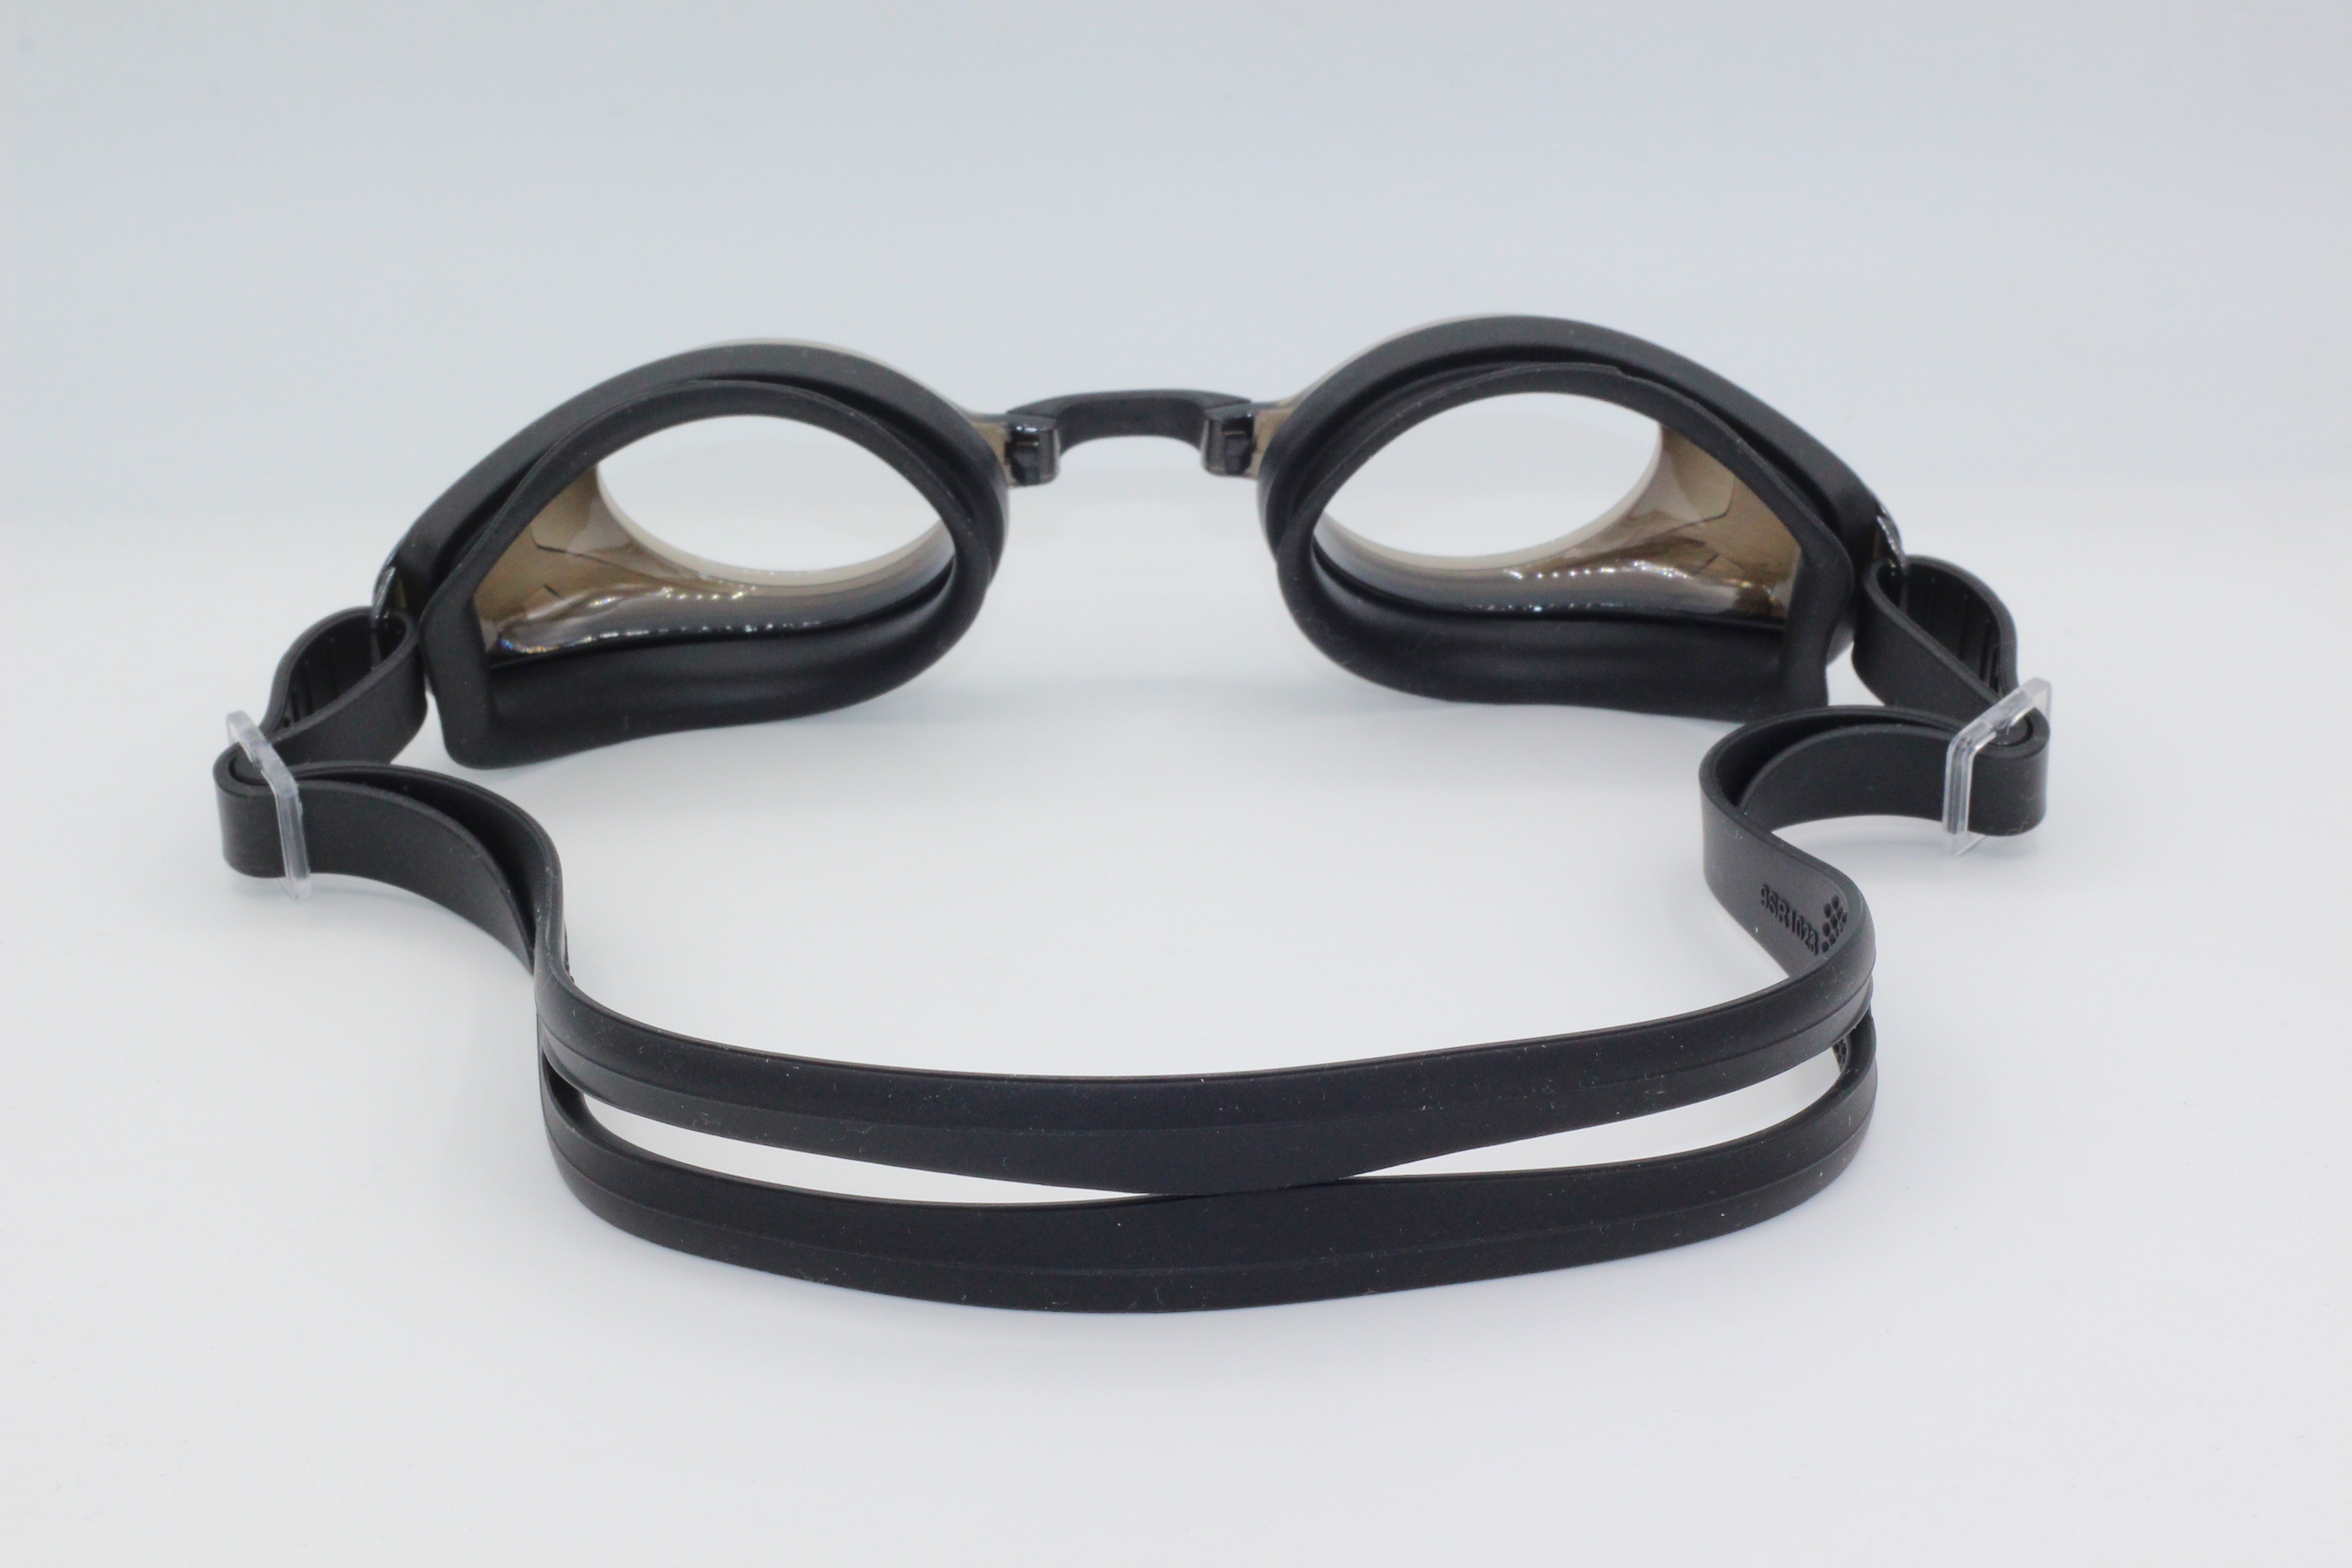 EF-X Numaralı Yüzücü Gözlüğü (Siyah)